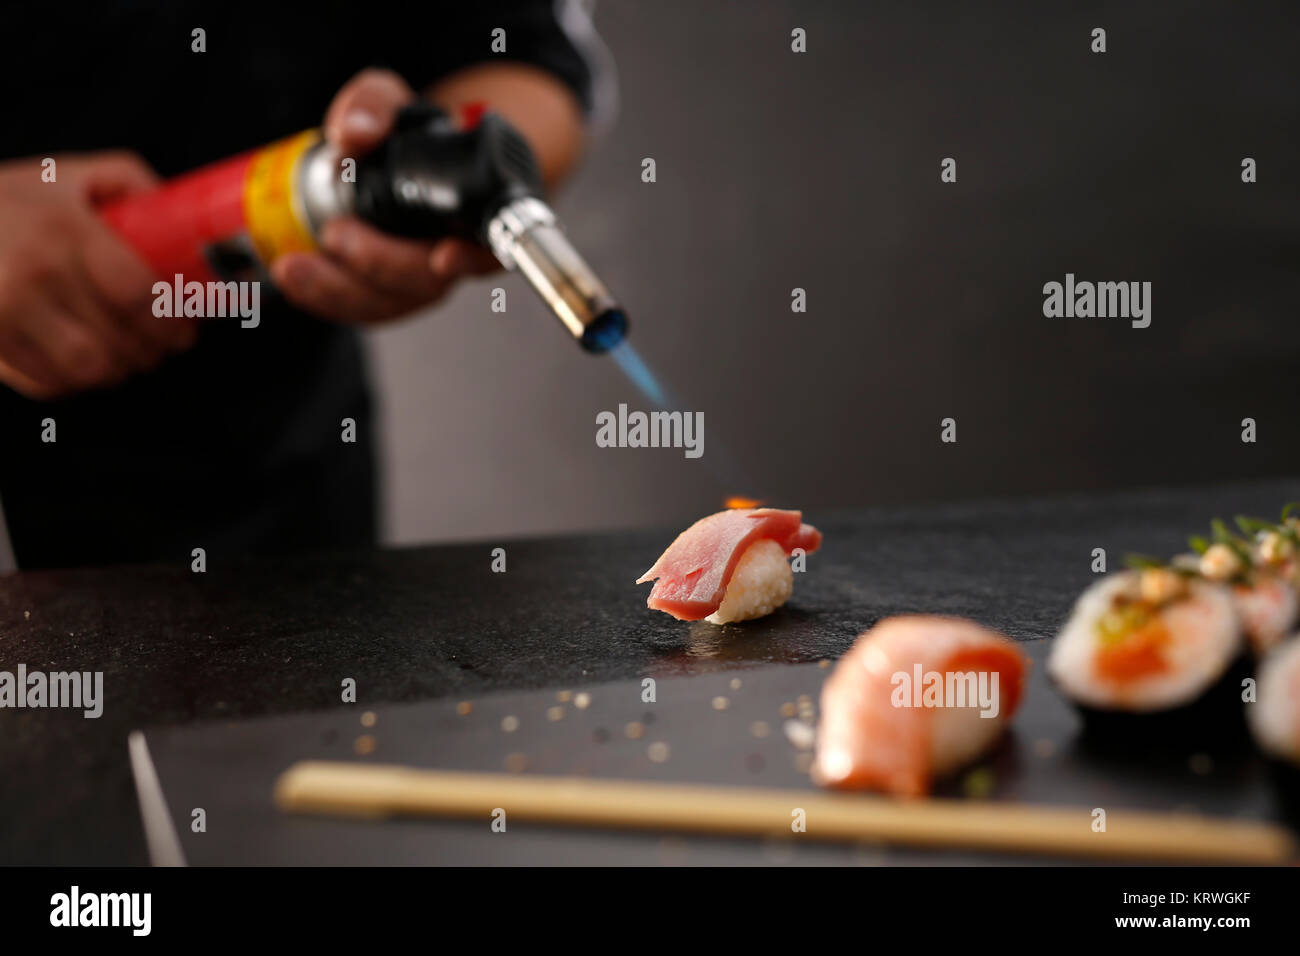 Sushi z surowym Å‚ososiem opalane pÅ‚omieniem. Porcja ryÅ¼u uformowanego w kulkÄ™ przykrytego kawaÅ‚kiem ryby Stock Photo